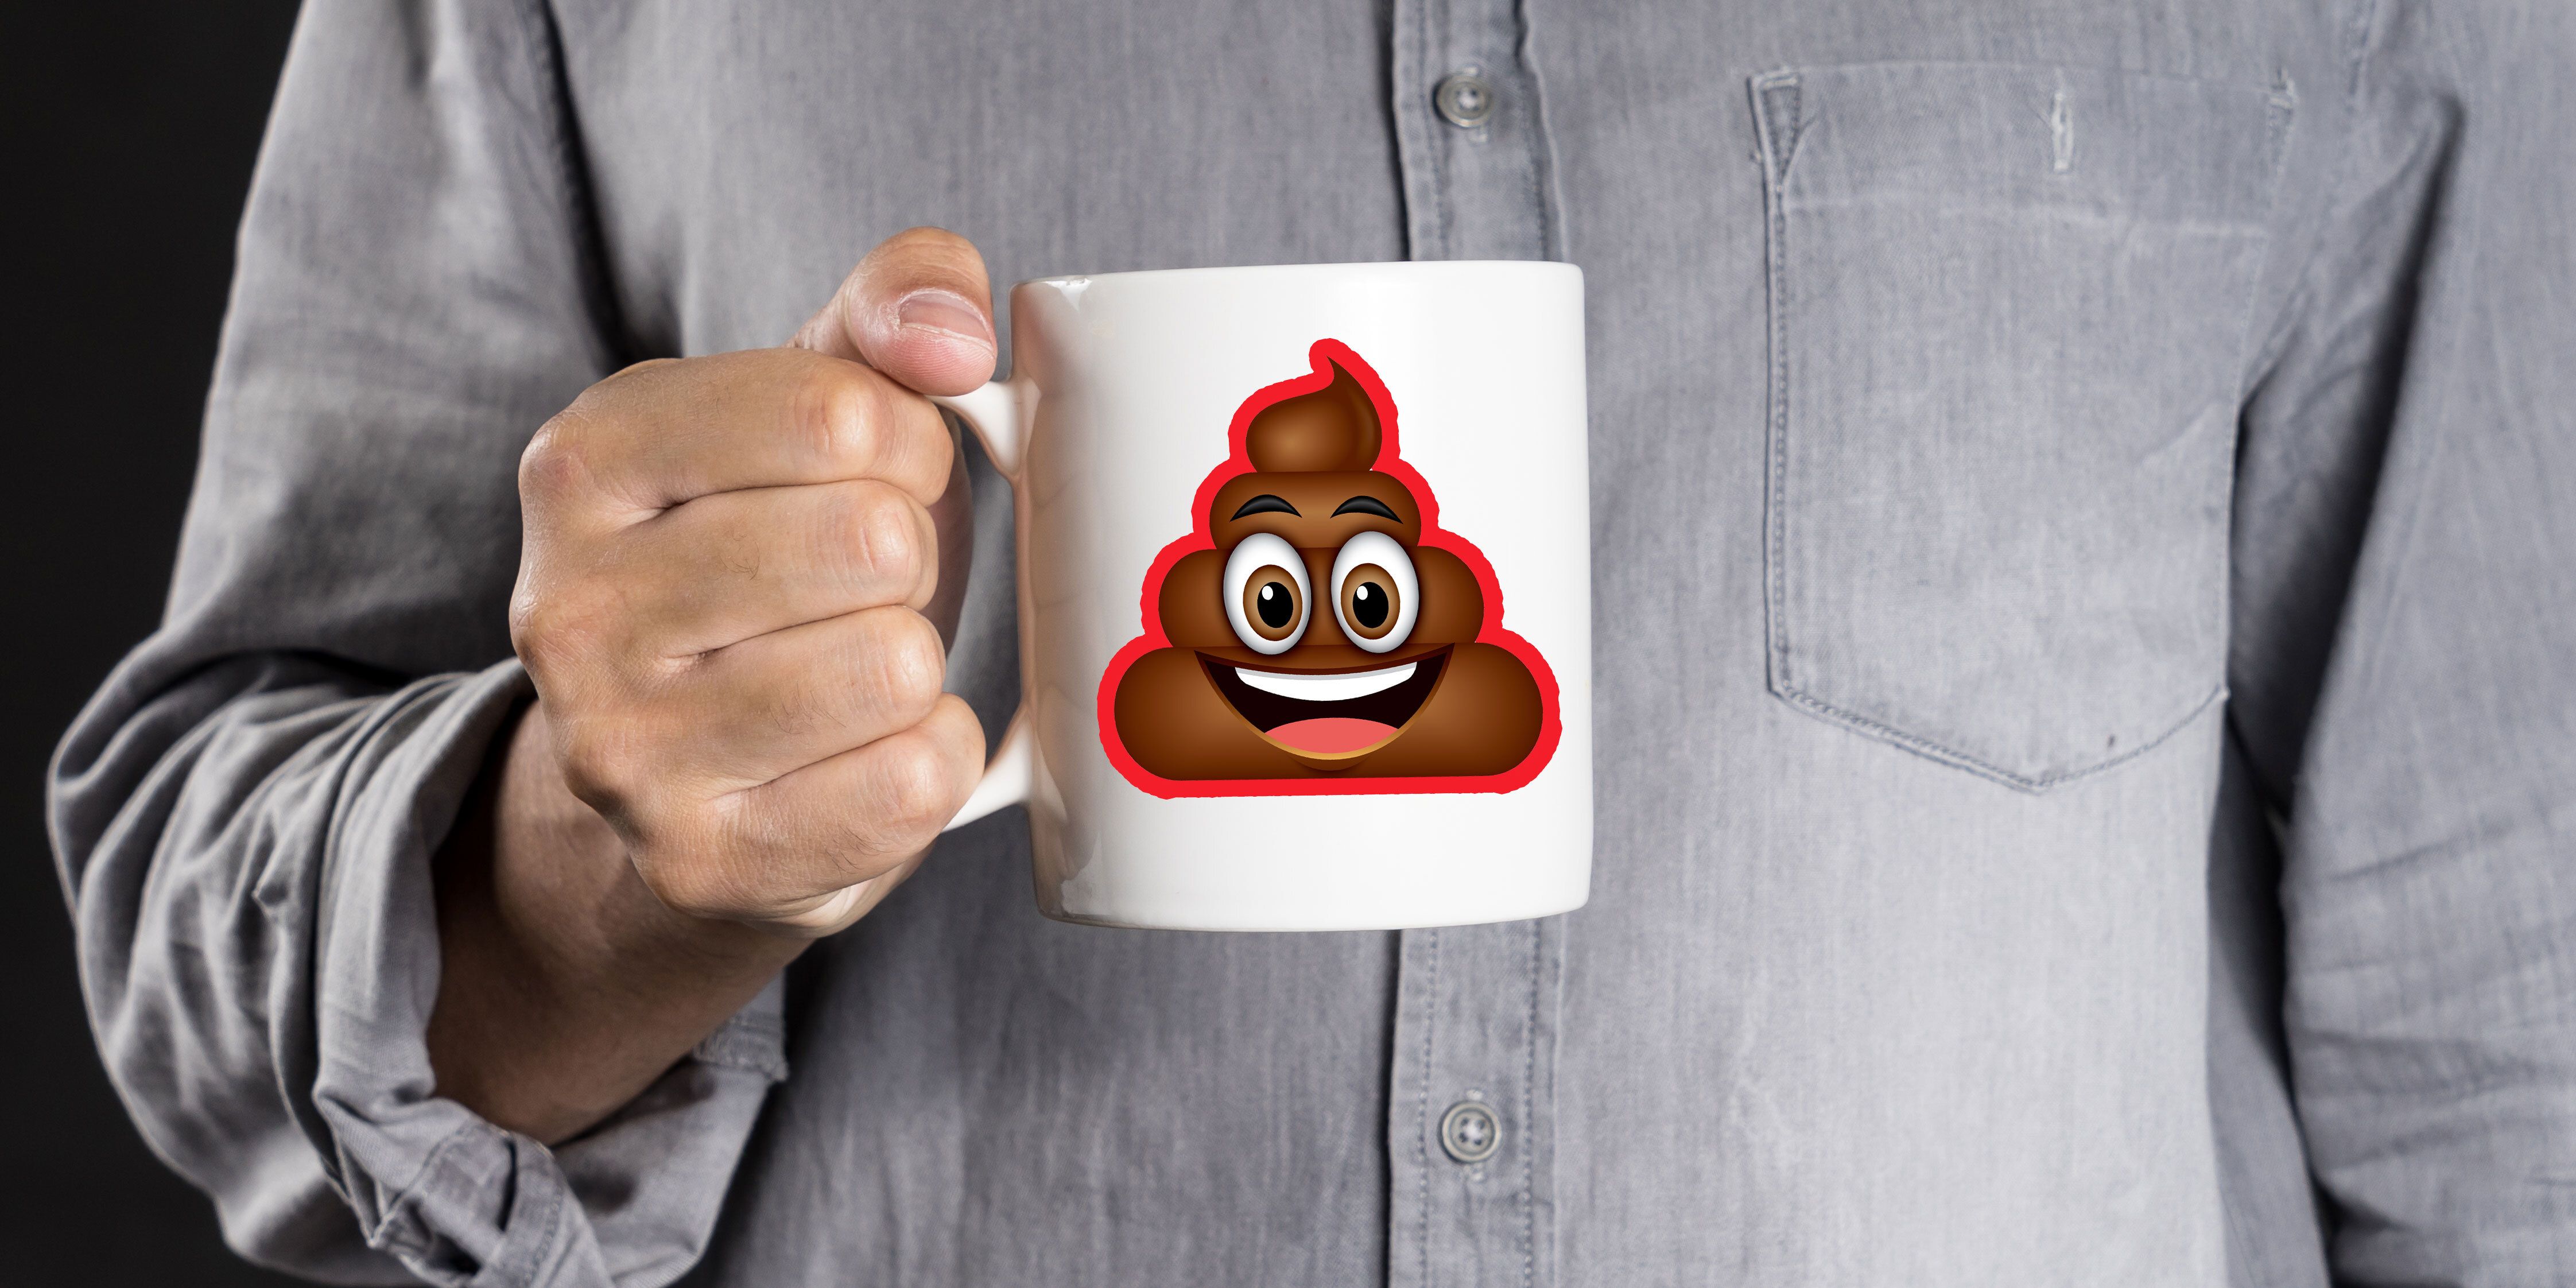 coffee makes you poop